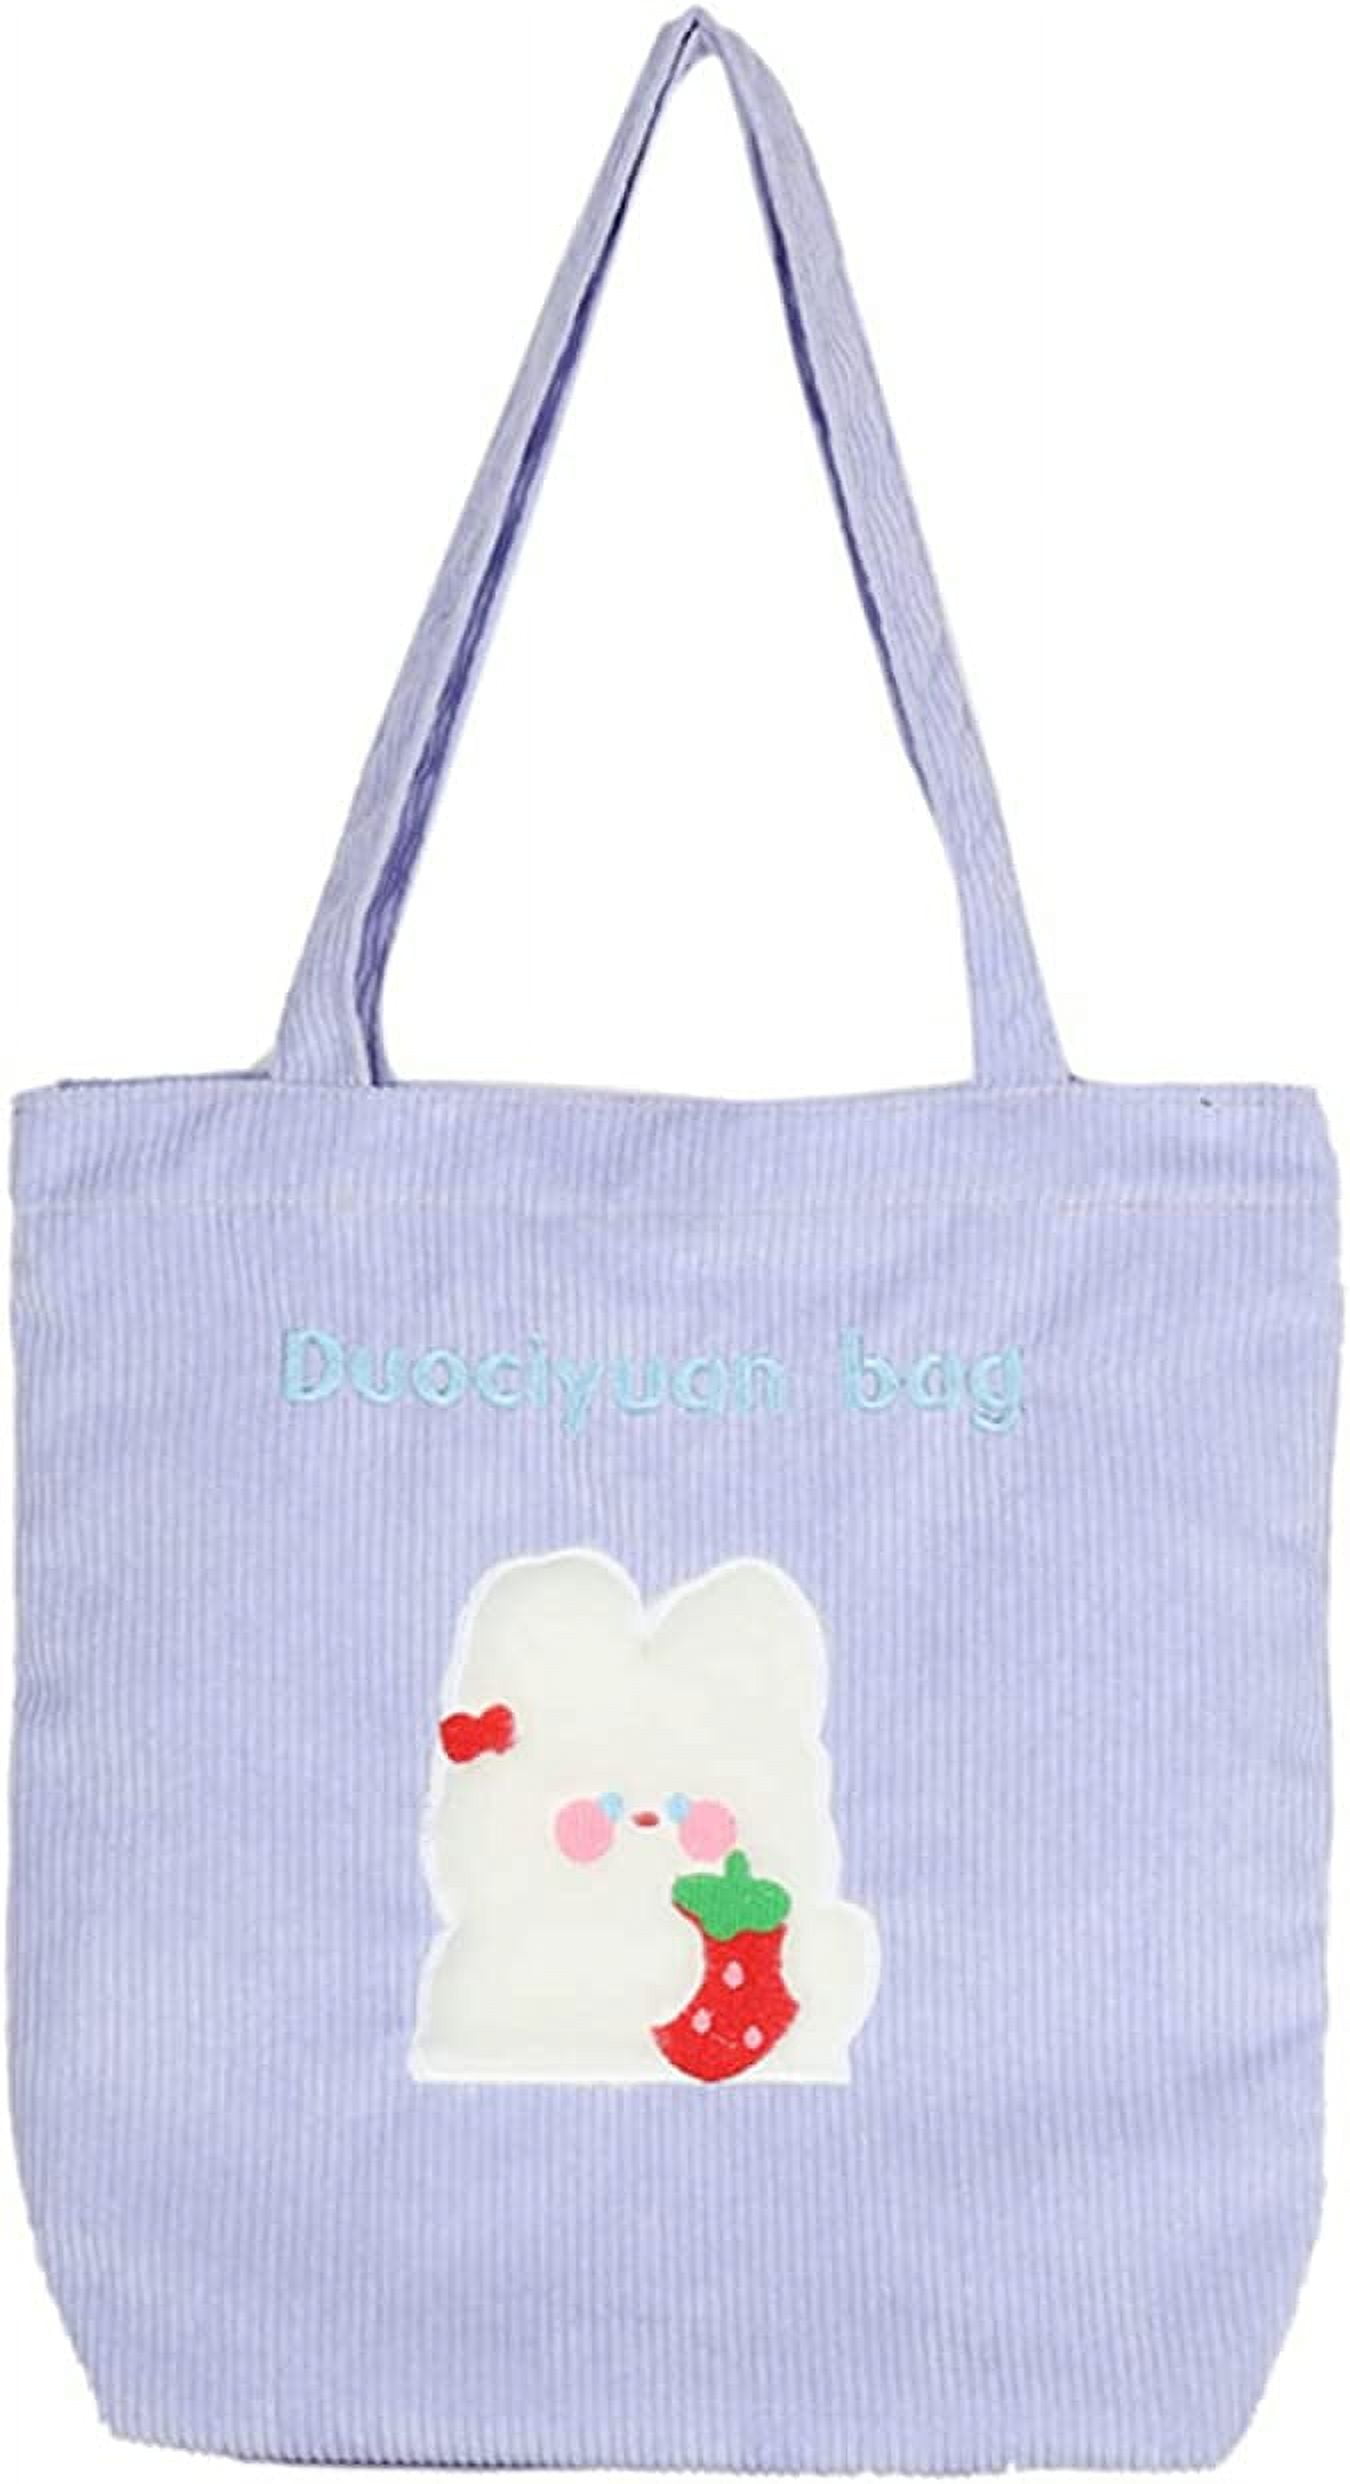 PIKADINGNIS Corduroy Tote Bag Aesthetic Tote Bags for School Cute Tote Bags  Teen Girls Trendy Stuff